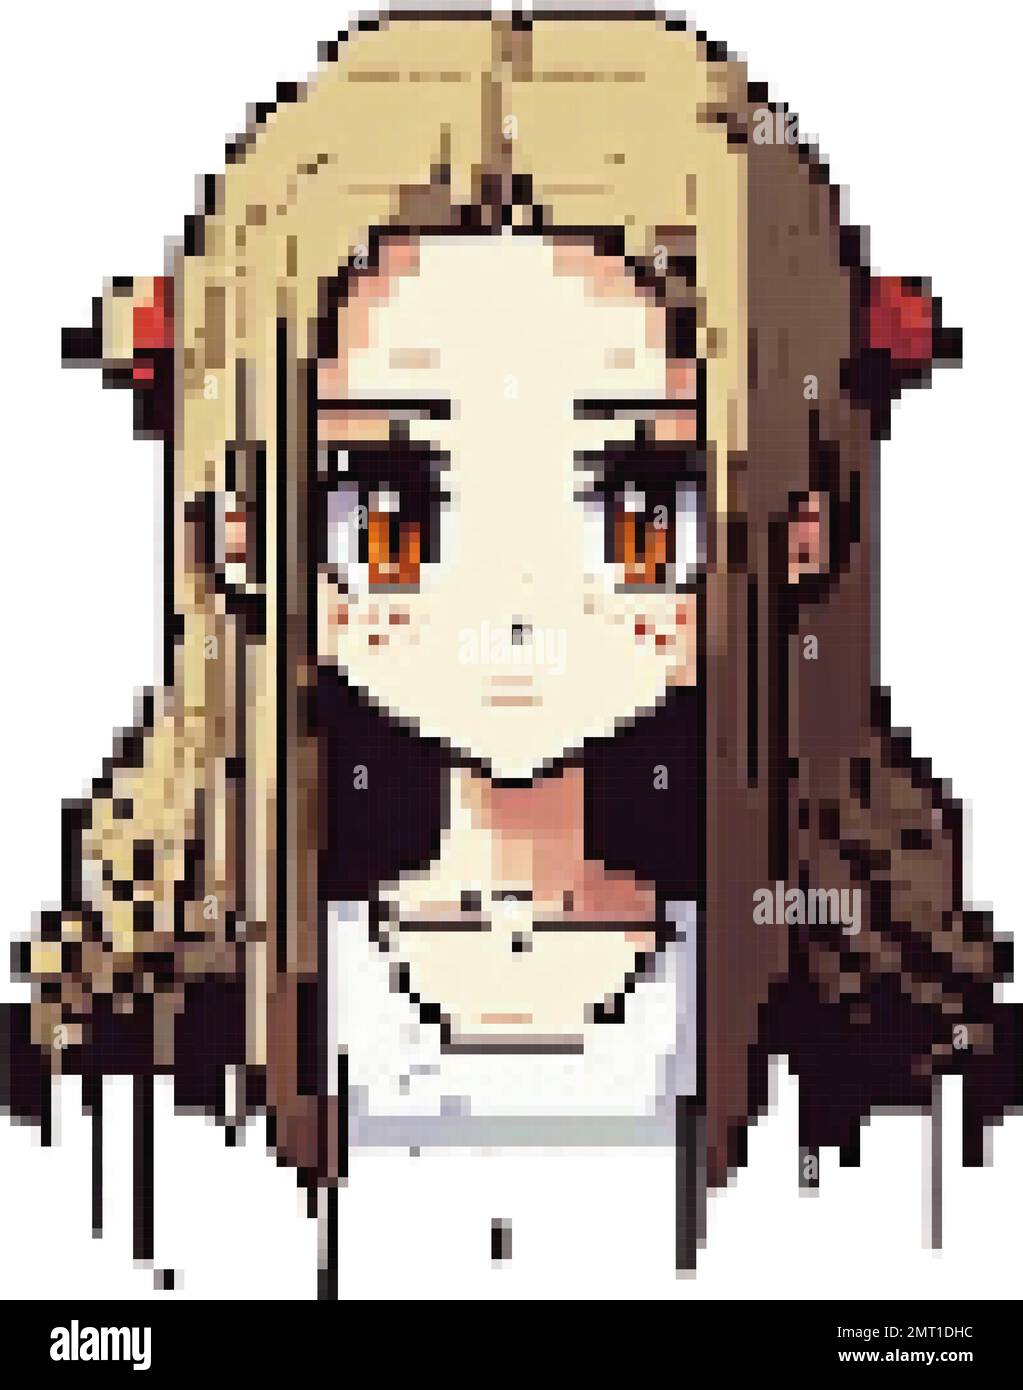 Pixel Art Anime Girl Stock Vector Illustration and Royalty Free Pixel Art  Anime Girl Clipart